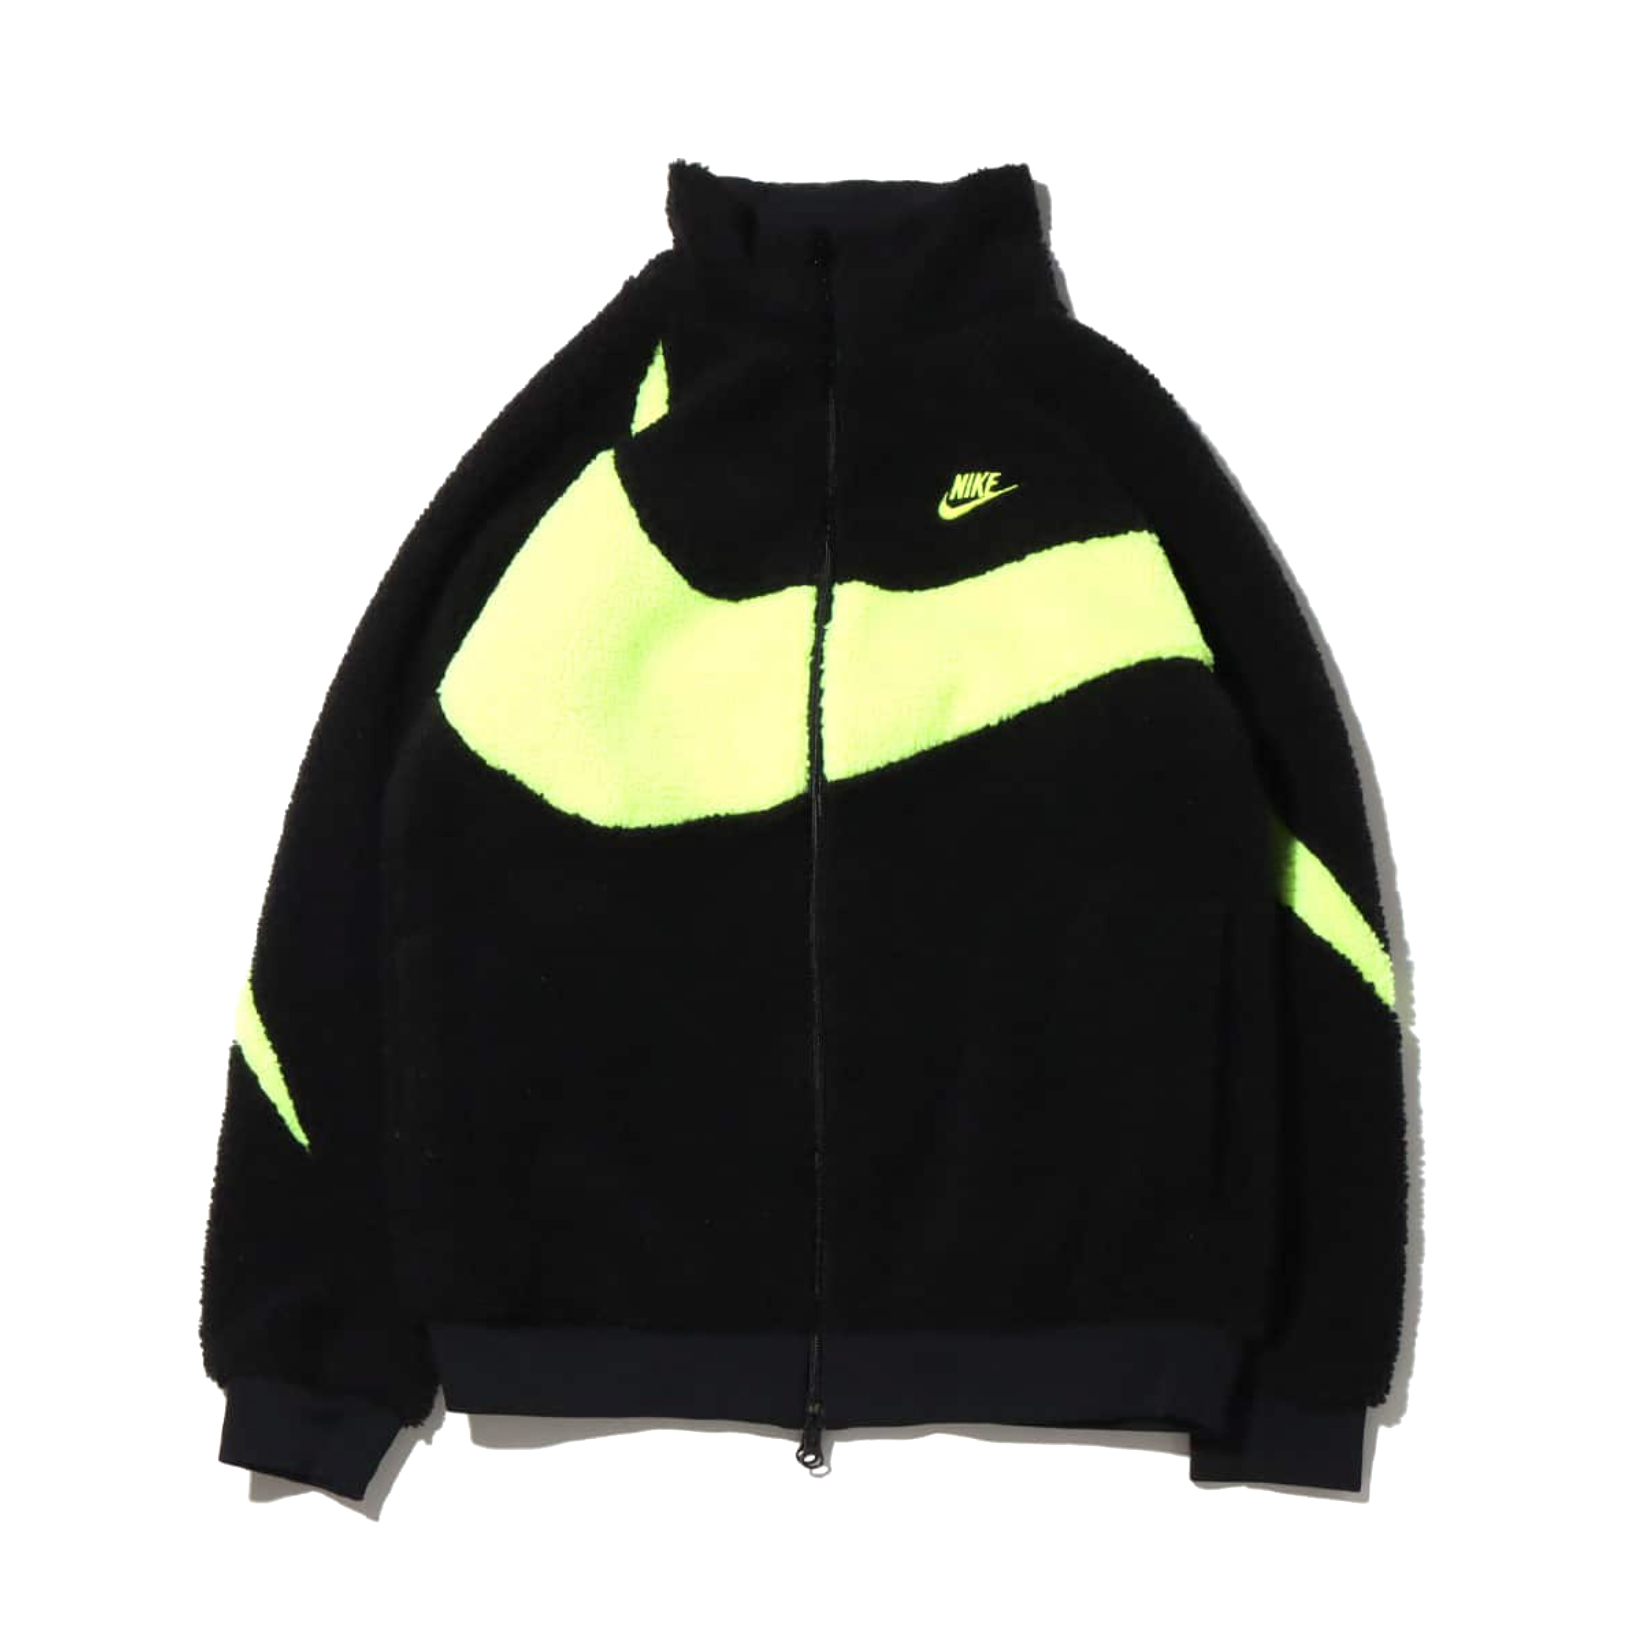 Nike Big Swoosh Reversible Boa Jacket - Danezon